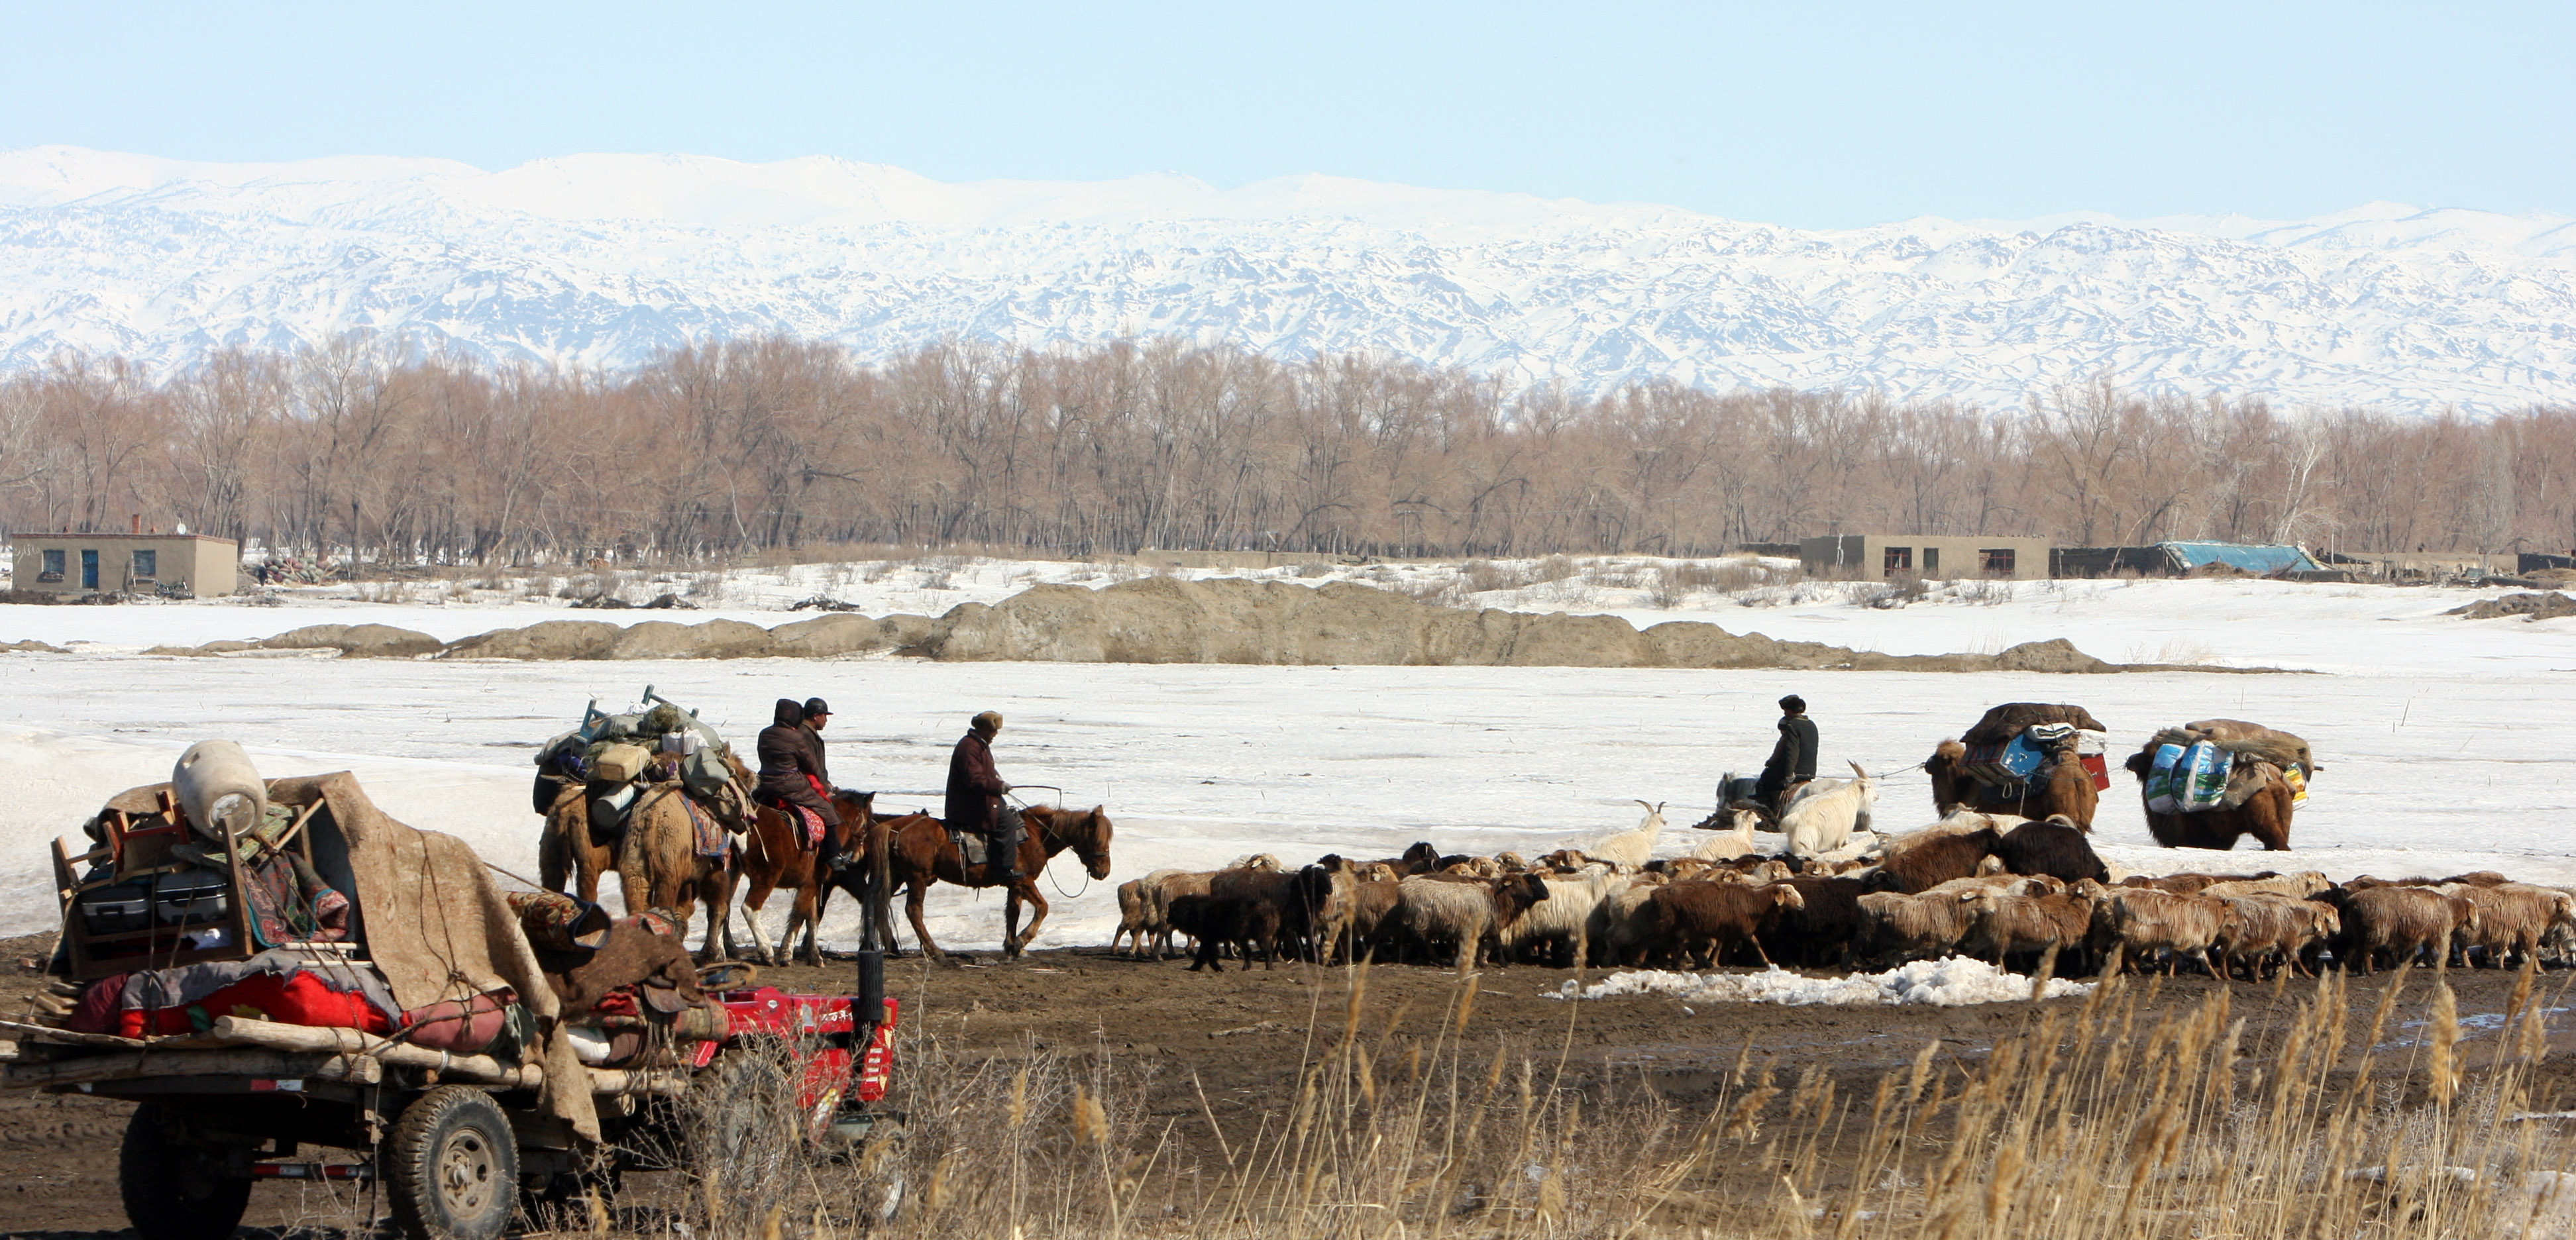 a bronzkori lovas nomádok terjesztették el a sclerosis multiplex genetikai faktorait észak-európában